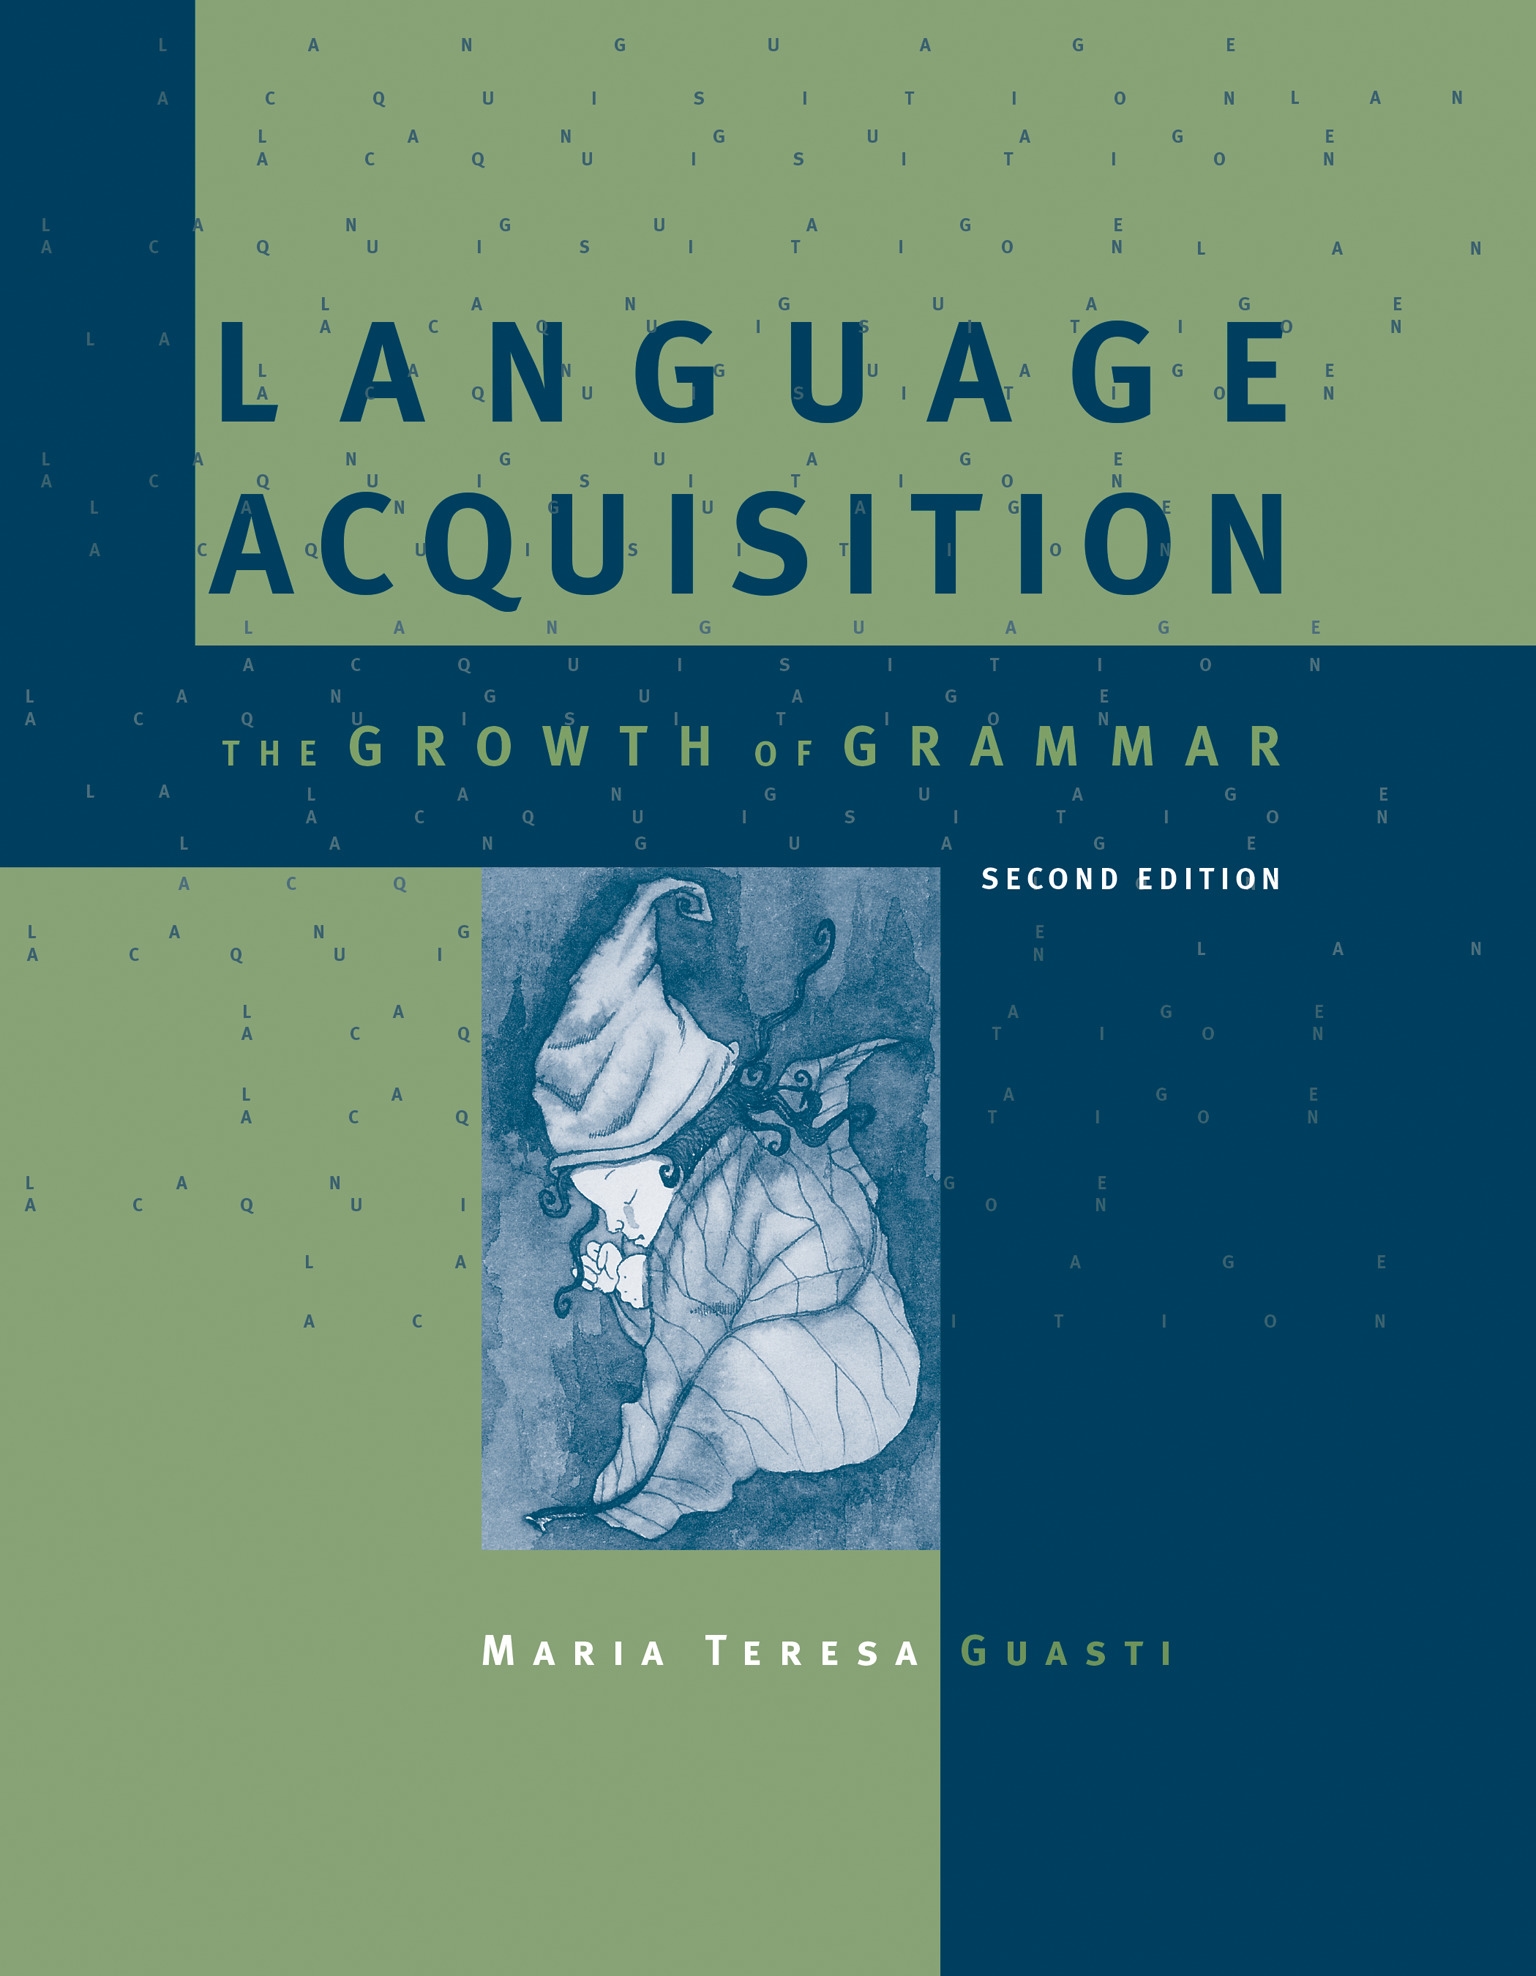 literature review second language acquisition